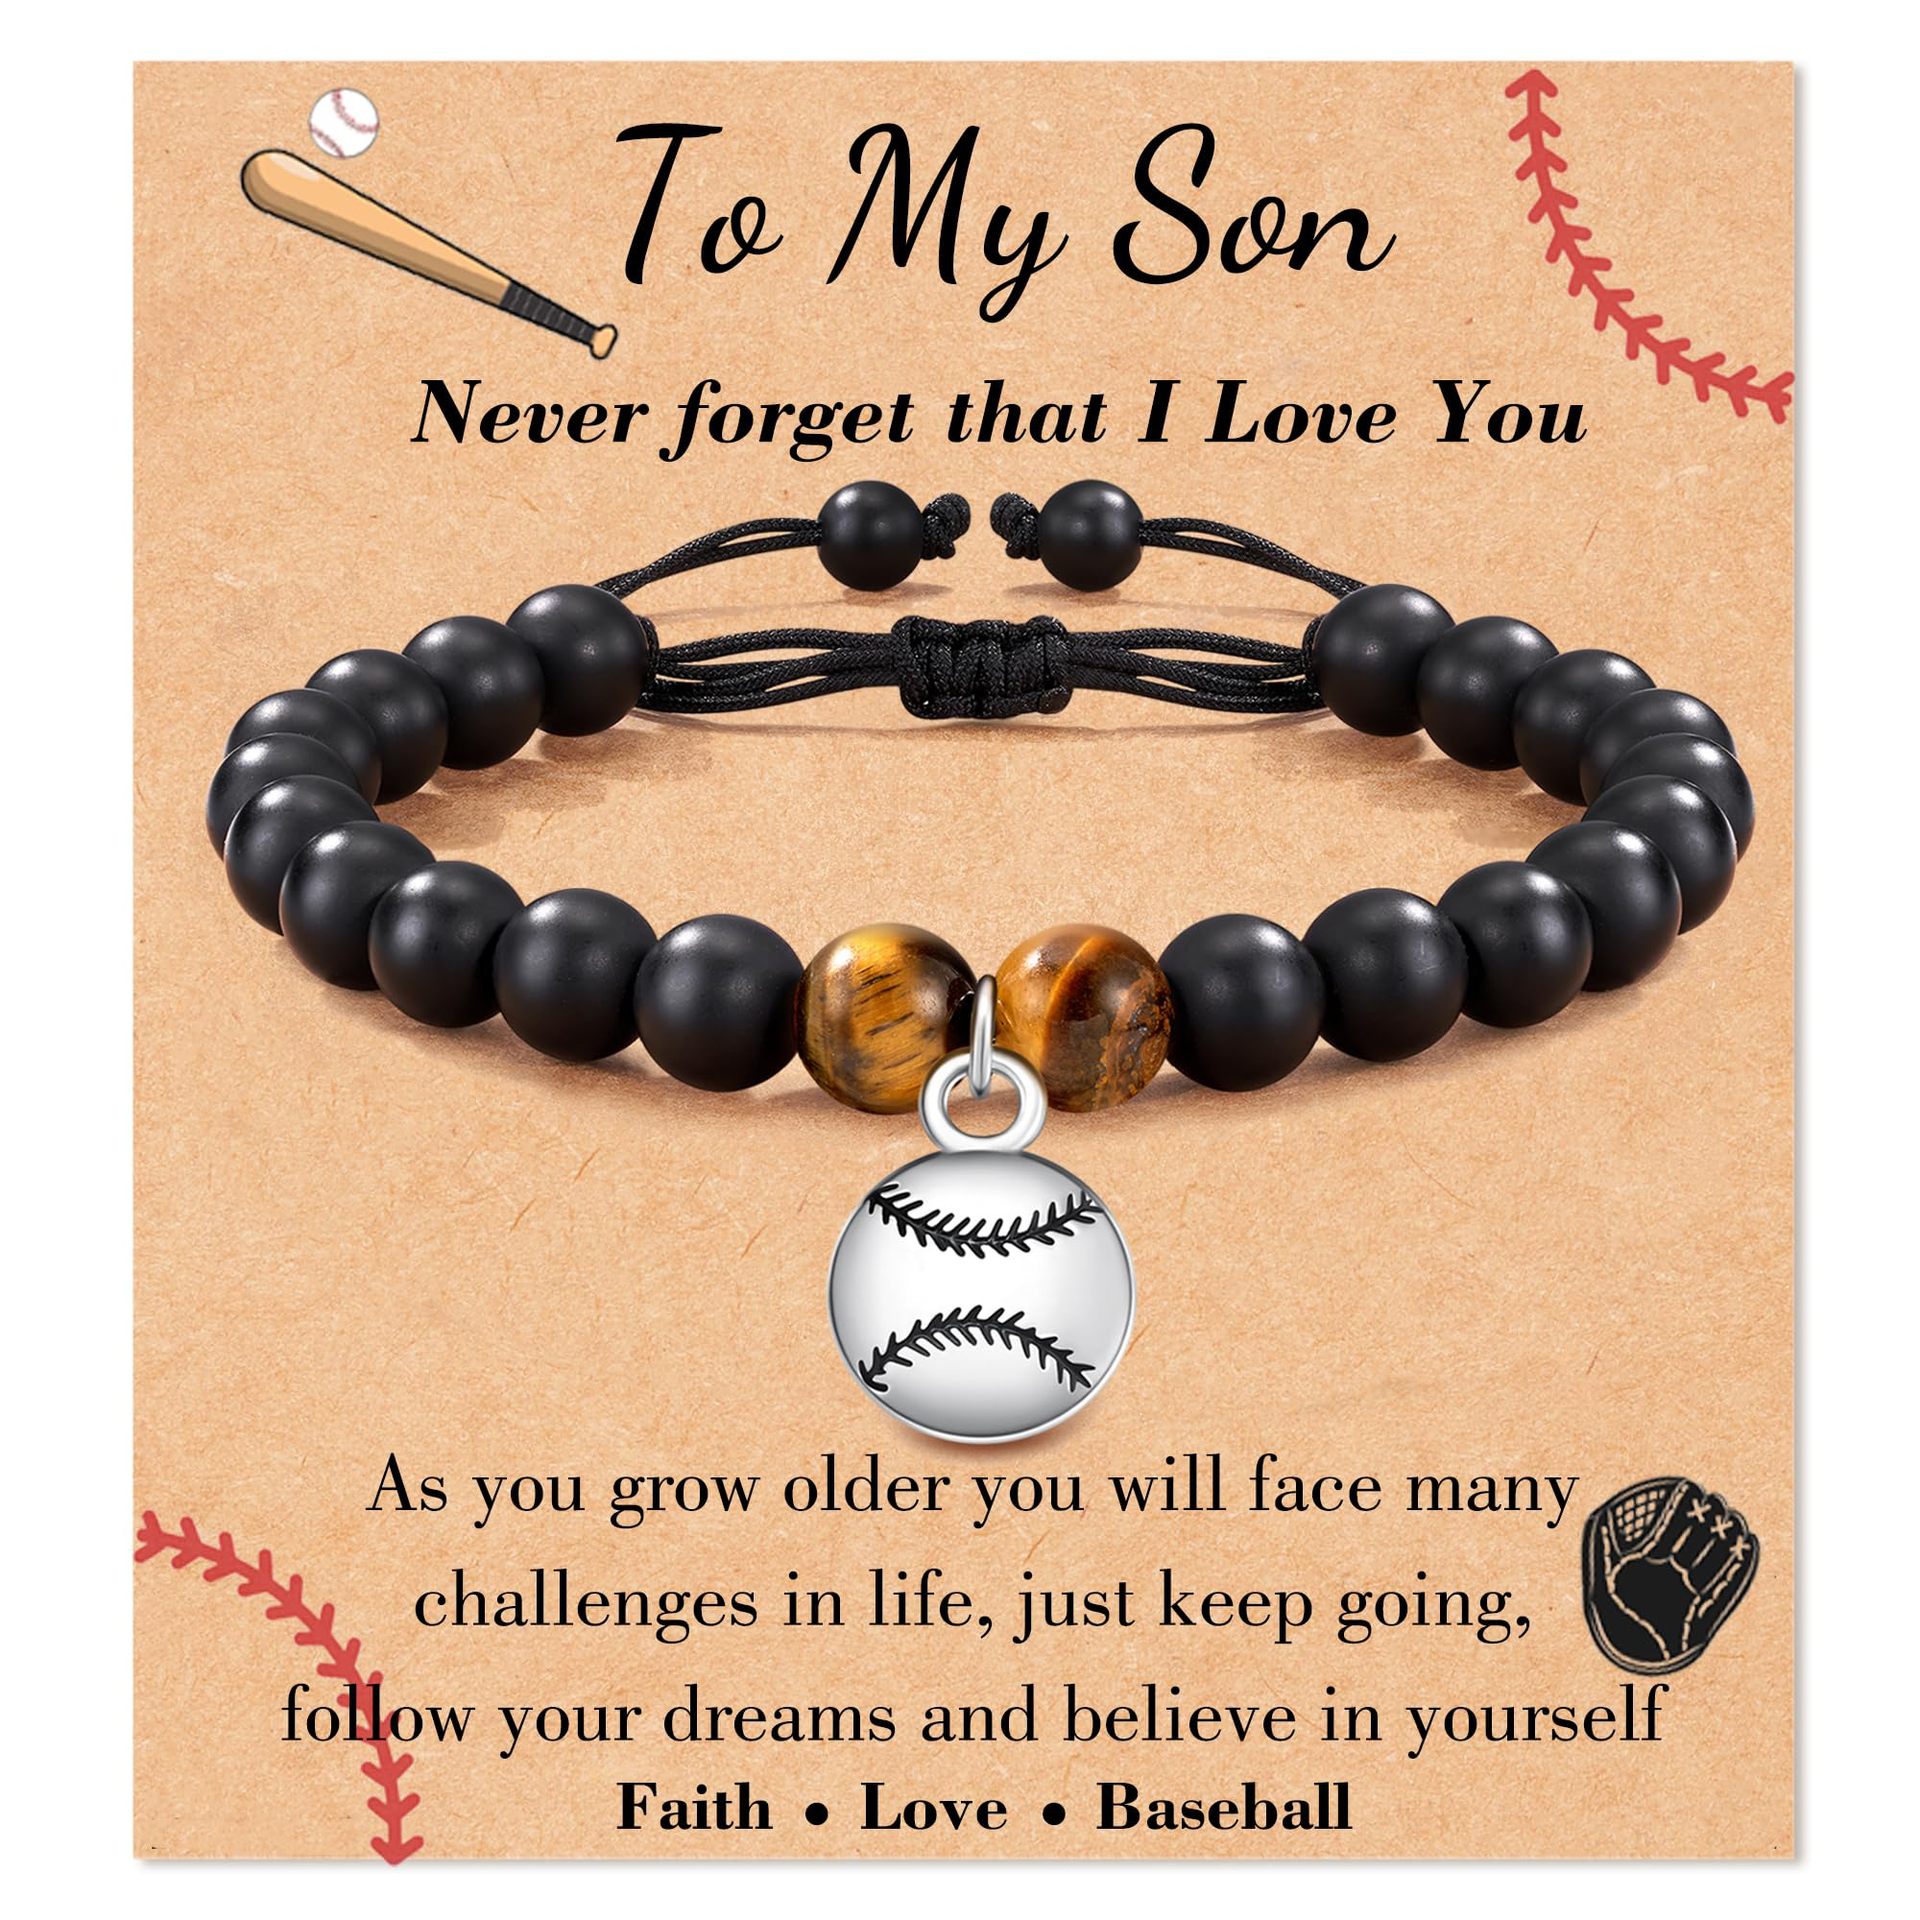 Baseball Beads Jewelry Making, Baseball Beads Bracelets